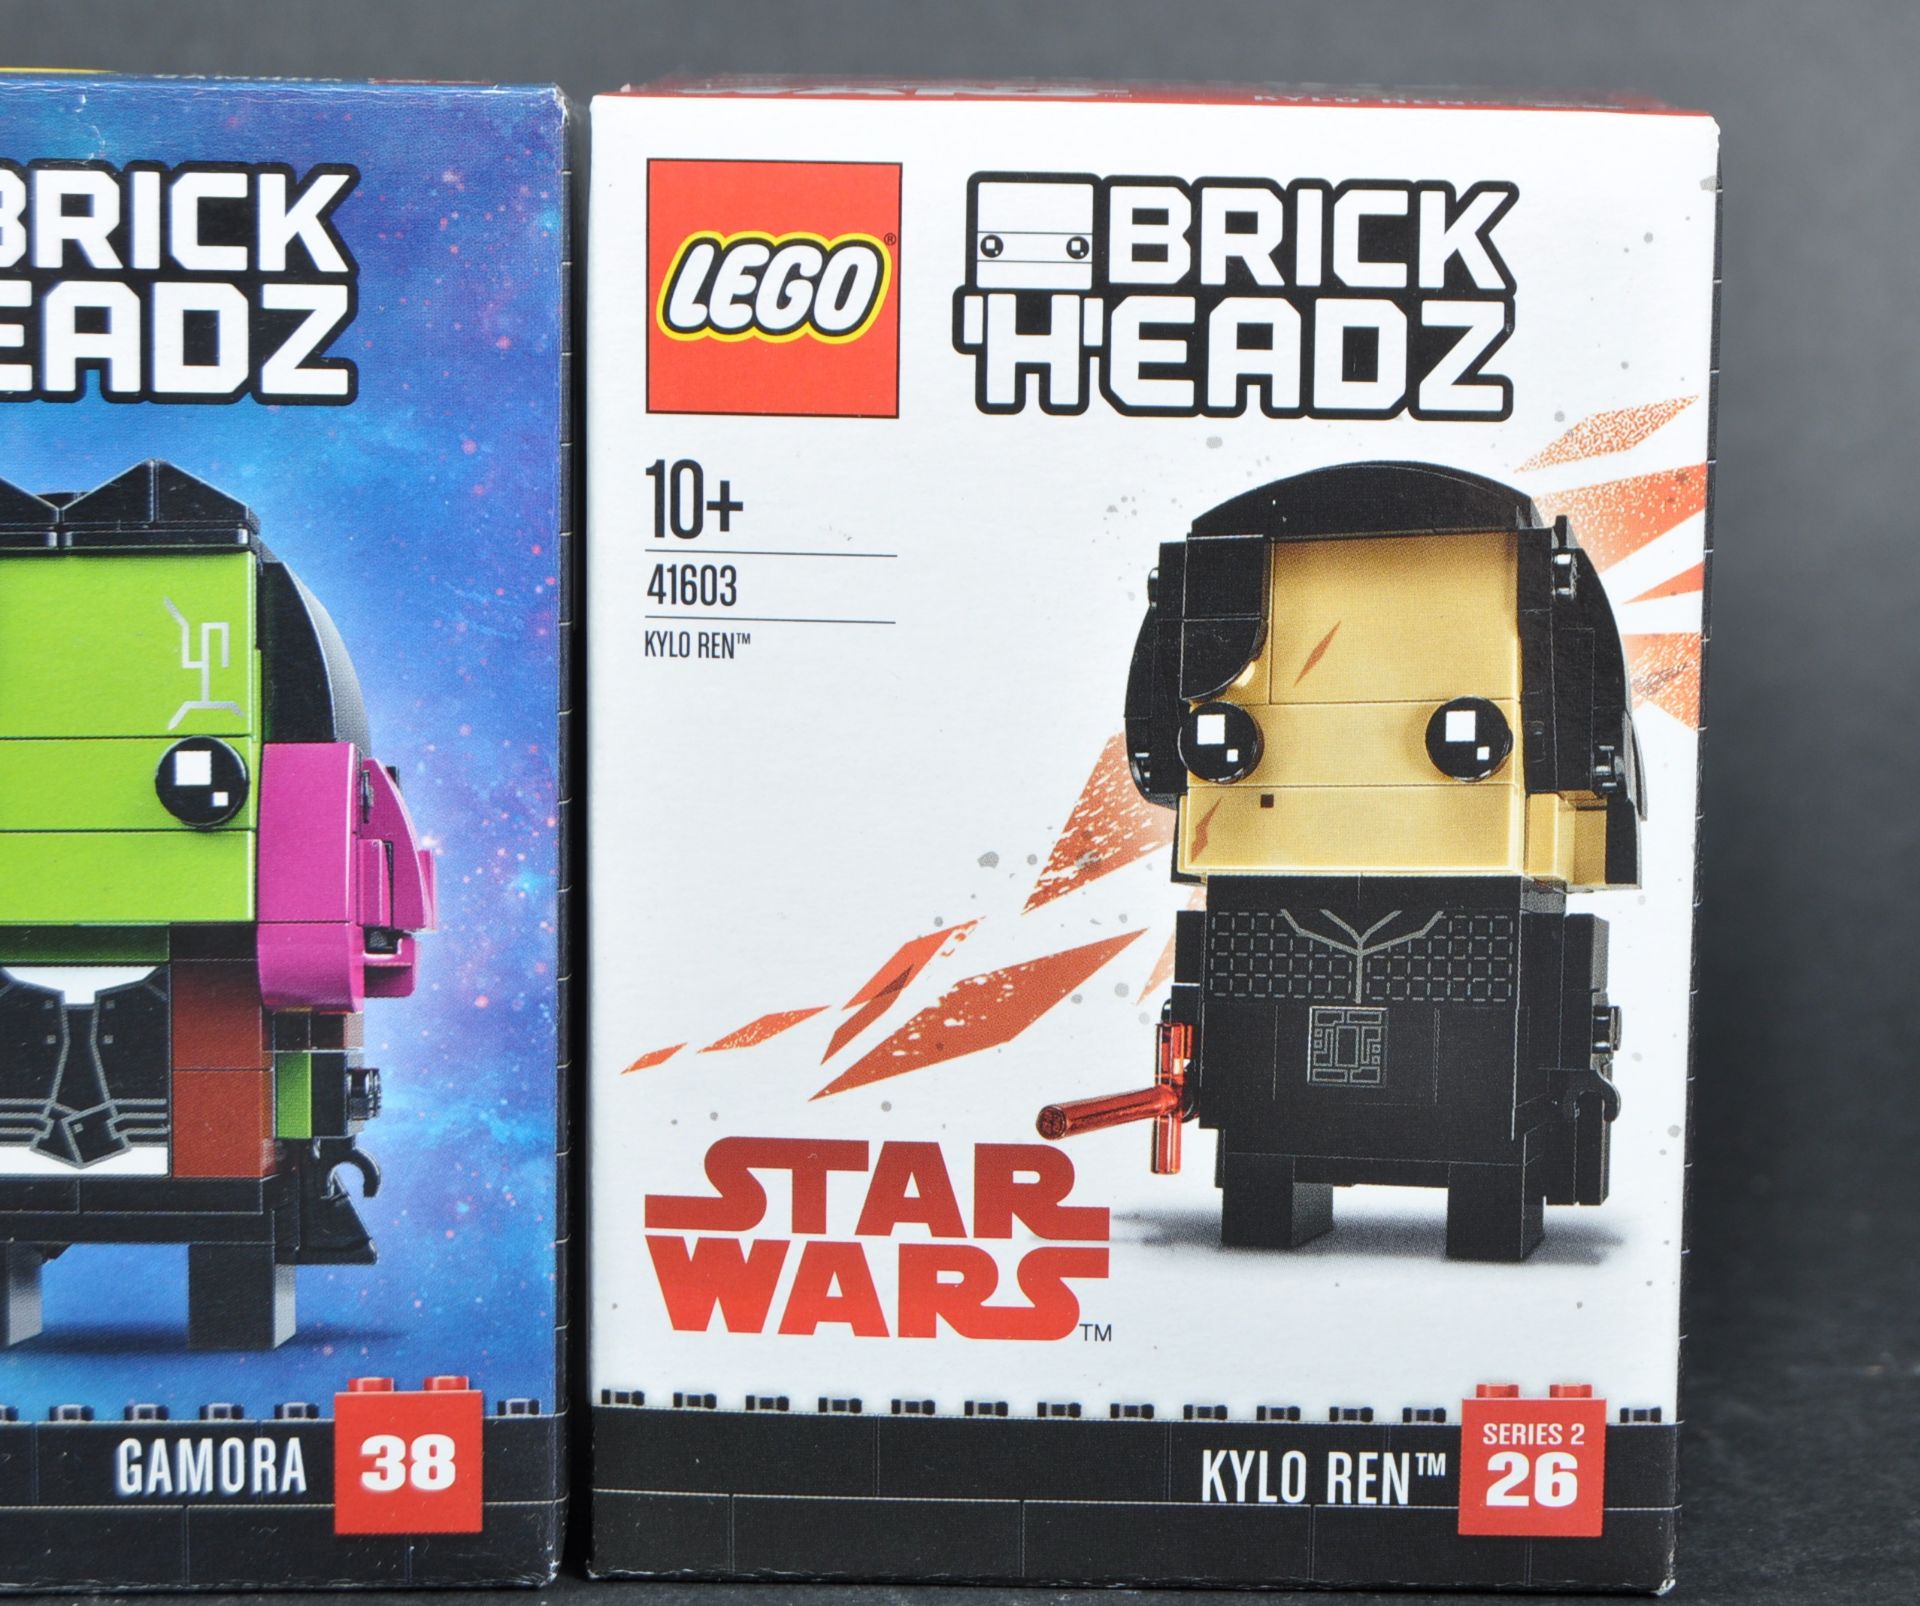 LEGO SETS - BRICK HEADZ - X7 FACTORY SEALED LEGO SETS - Image 8 of 15